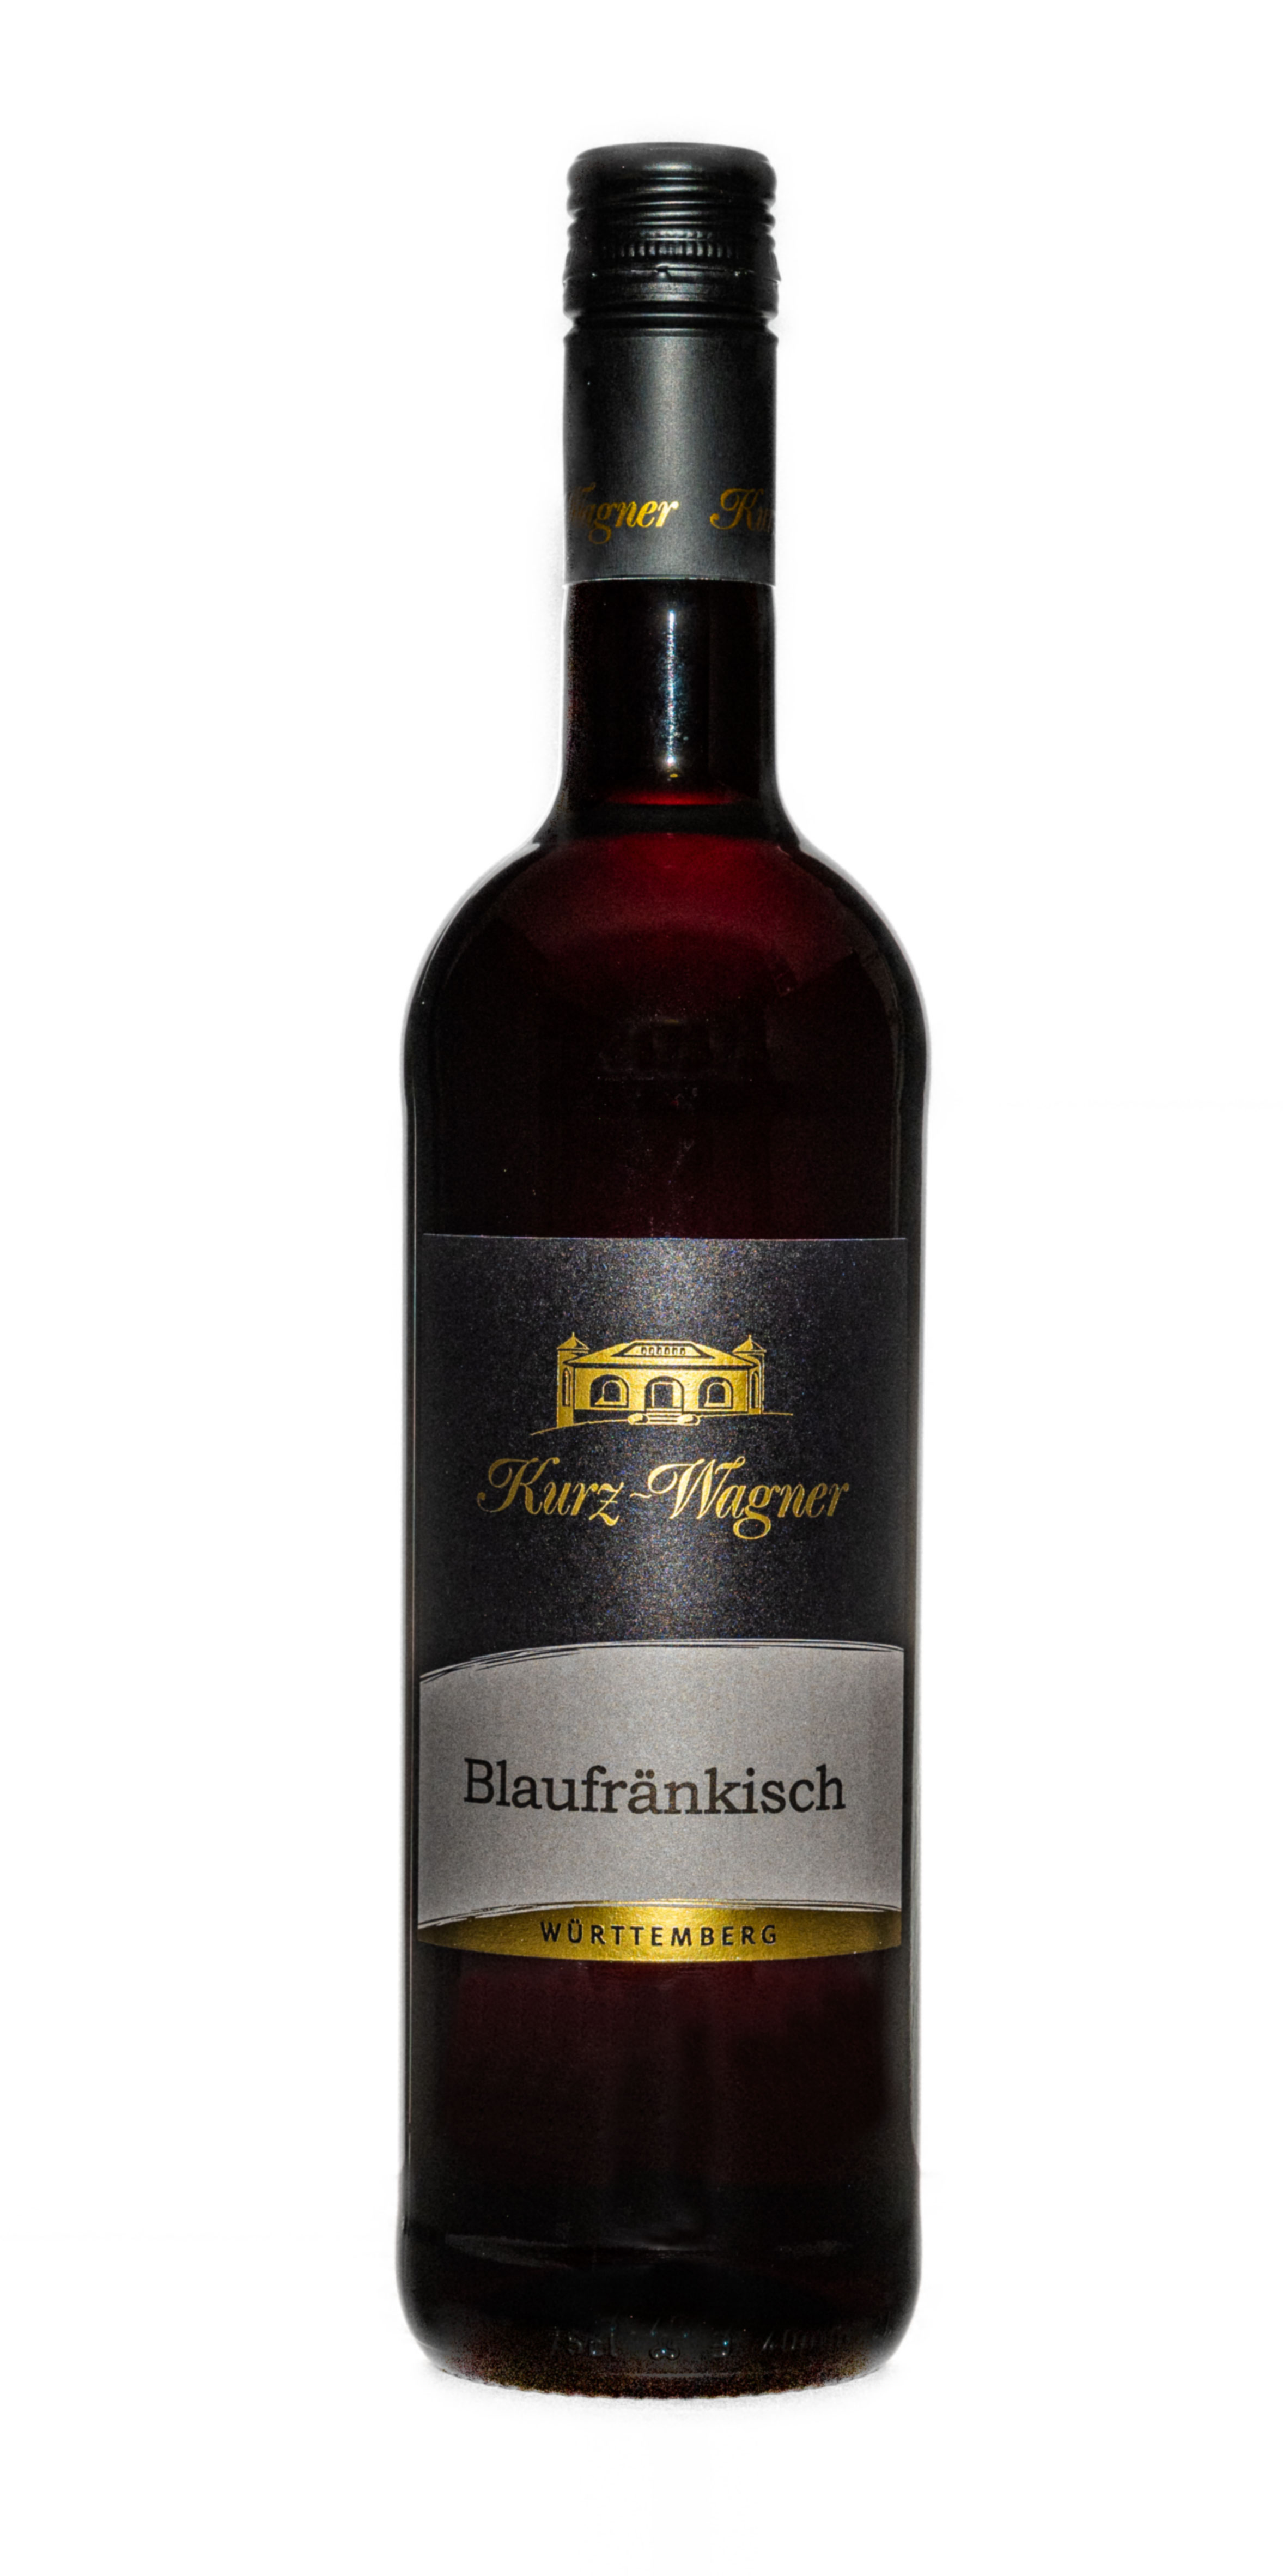 2020 Blaufränkisch feinherb 0,75 L - Weingut Kurz-Wagner